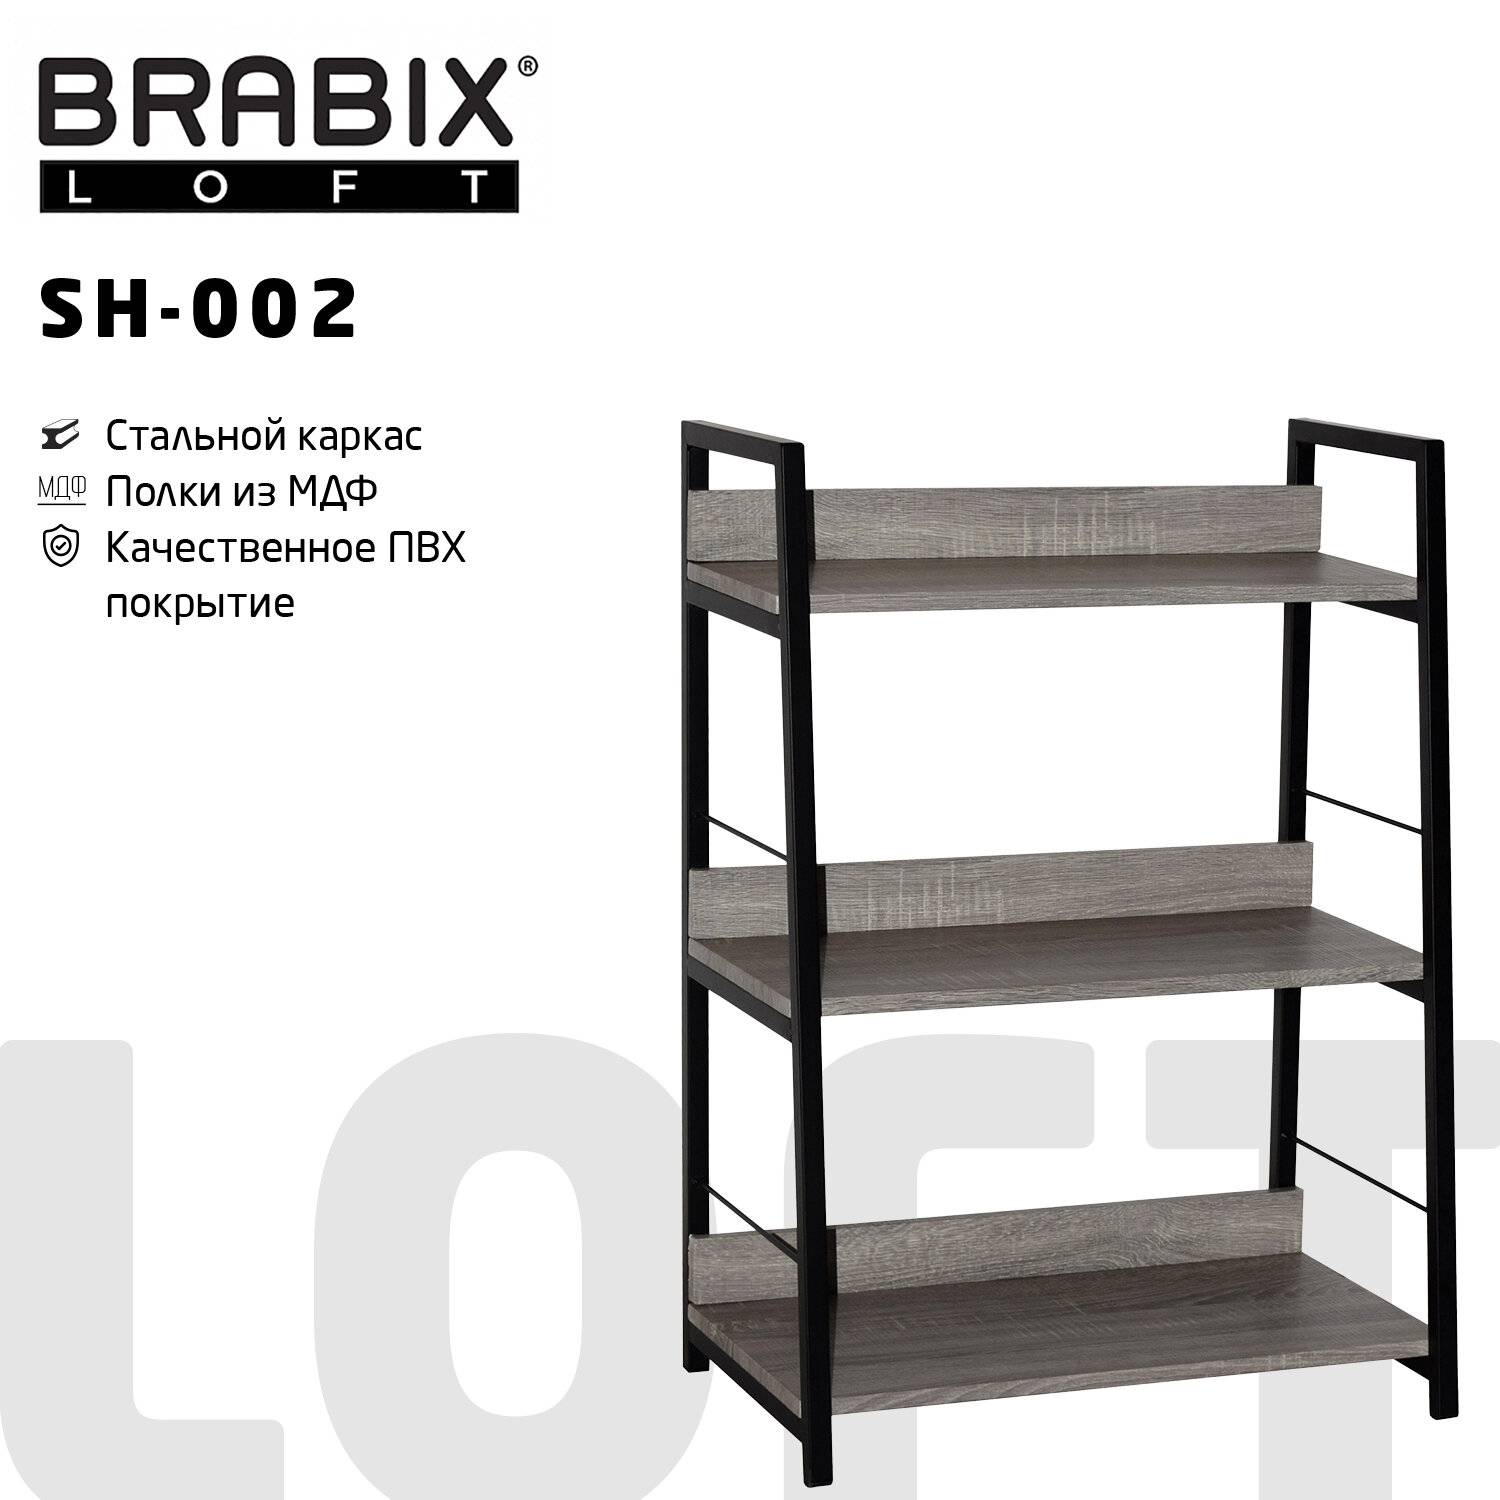 Стеллаж на металлокаркасе Brabix Loft sh-003